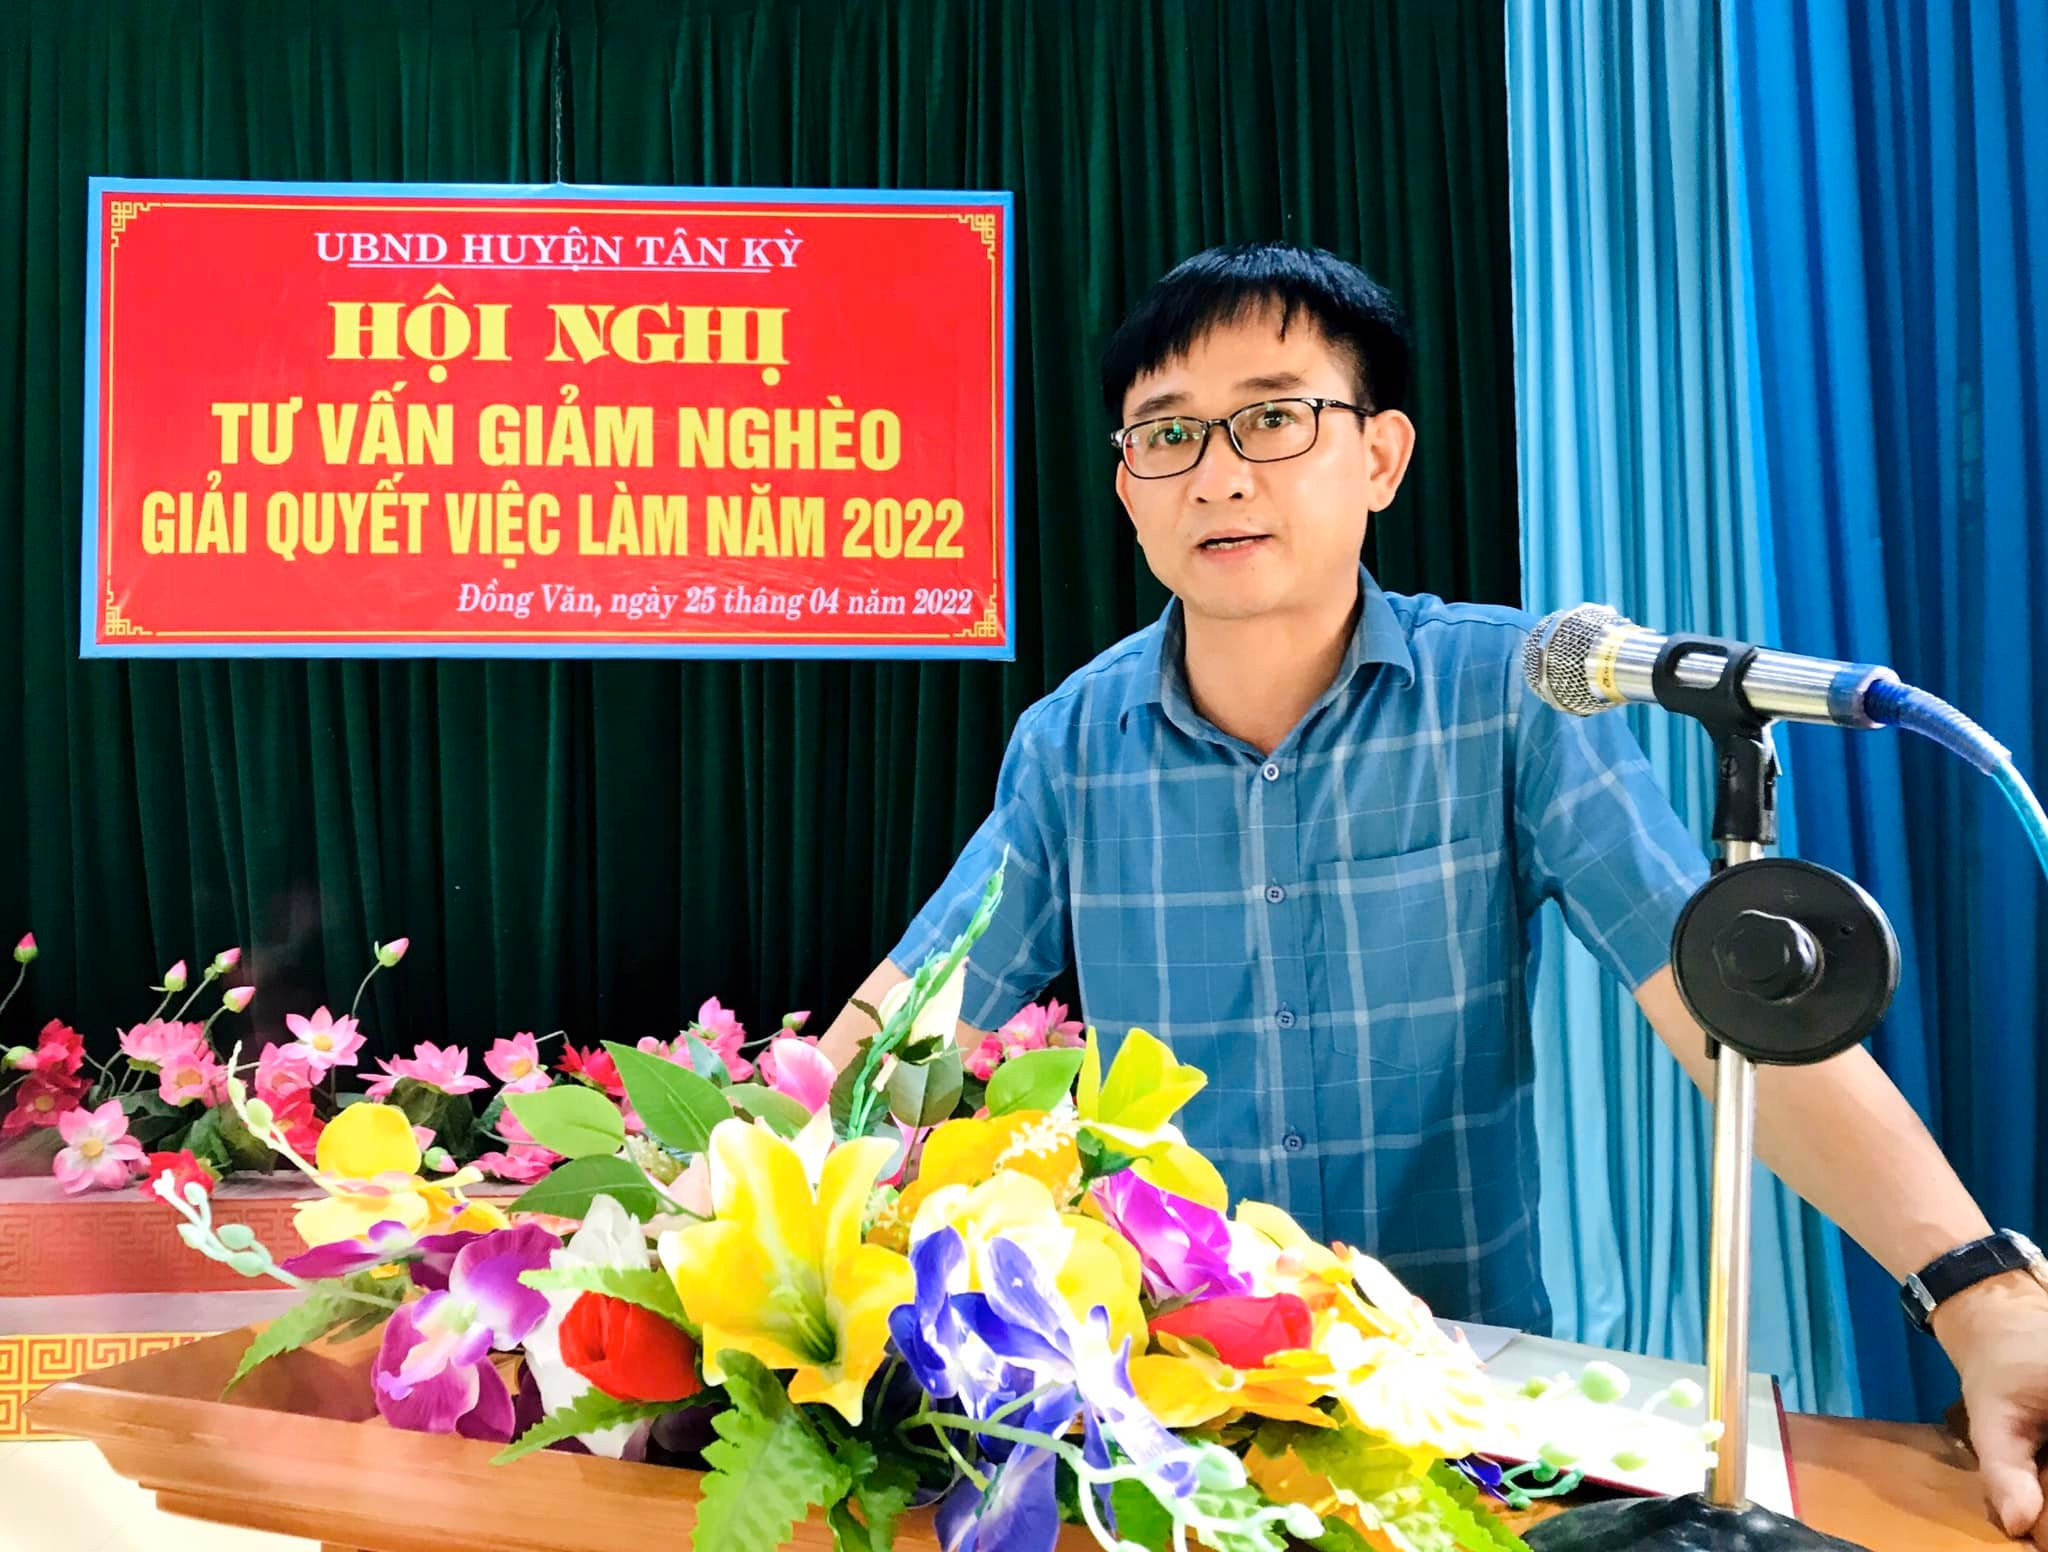 Đồng chí Nguyễn Văn Thực, Phó chủ tịch UBND huyện Tân Kỳ phát biểu khai mạc và chỉ đạo